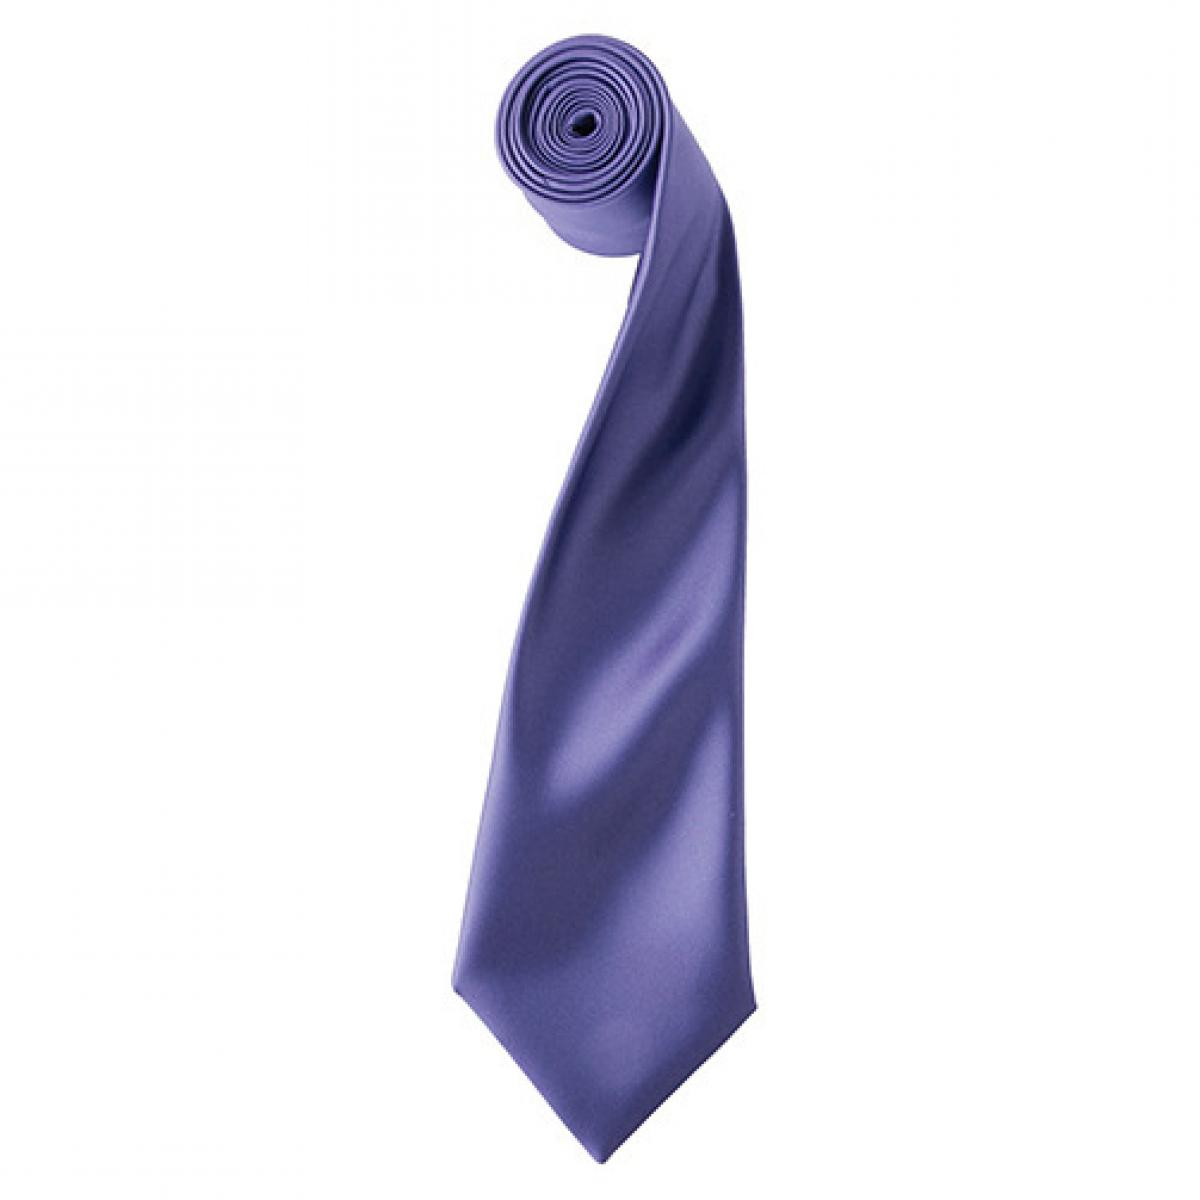 Hersteller: Premier Workwear Herstellernummer: PR750 Artikelbezeichnung: Satin Tie ´Colours´ / 144 x 8,5 cm Farbe: Purple (ca. Pantone 269)